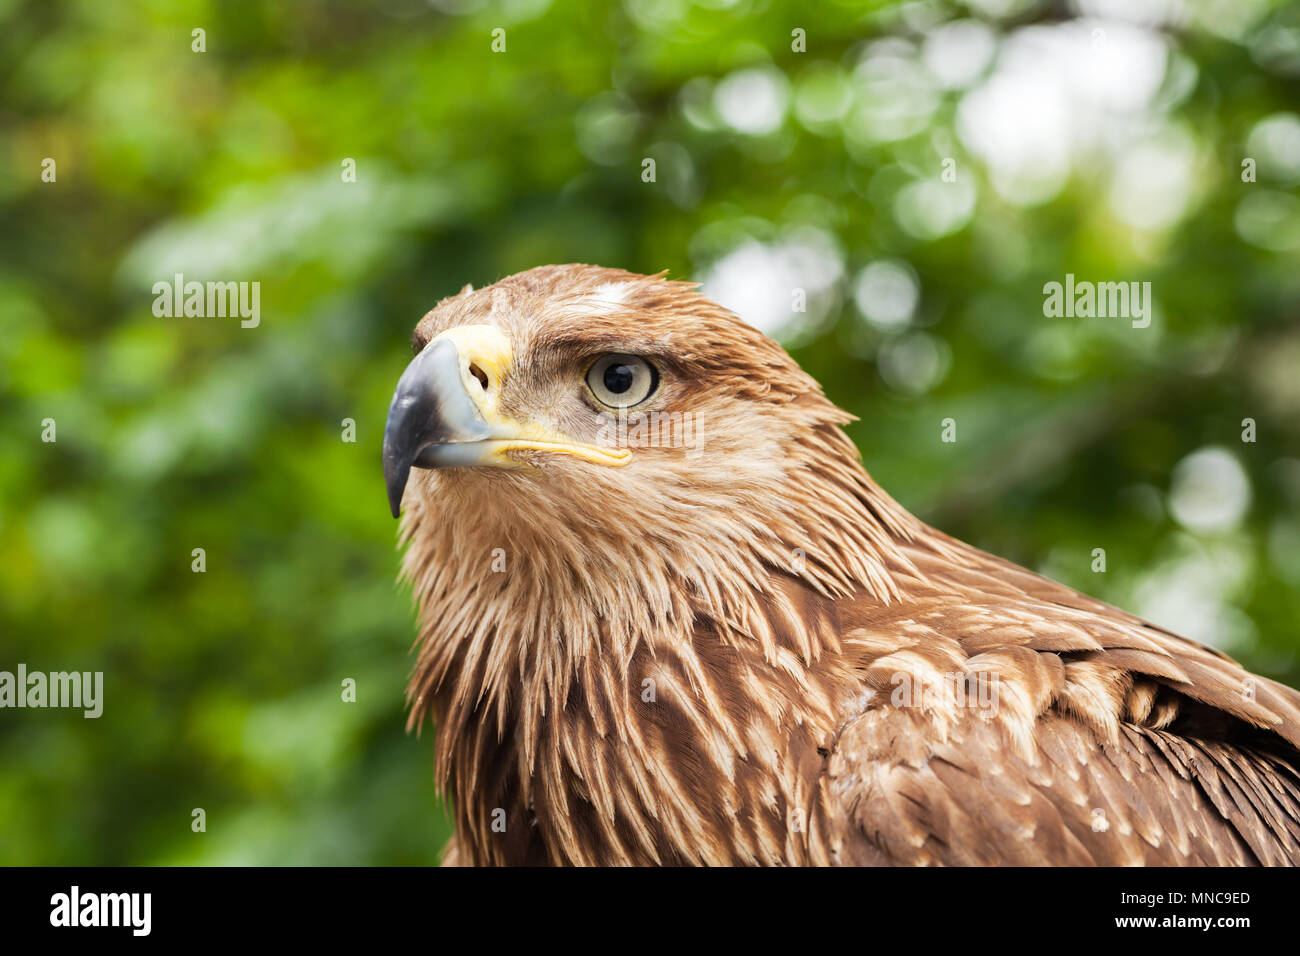 Close-up retrato de águila real Aquila chrysaetos. Es uno de los mejores conocidos de aves de presa Foto de stock